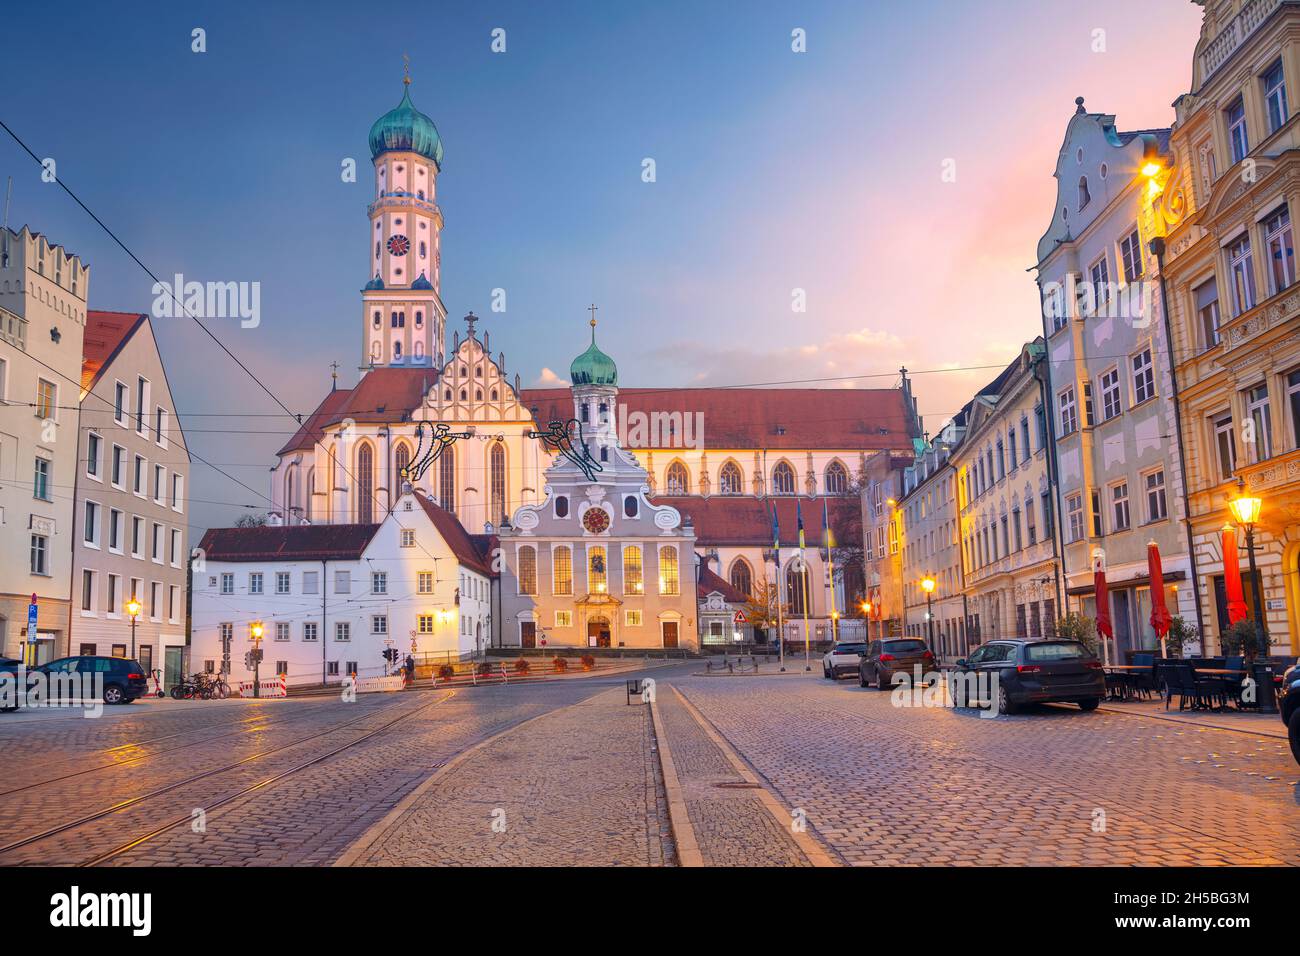 Augsbourg, Allemagne.Image de paysage urbain de la vieille ville de la rue d'Augsbourg, en Allemagne avec la basilique de Saint-Ulrich et d'Afrala au coucher du soleil d'automne. Banque D'Images